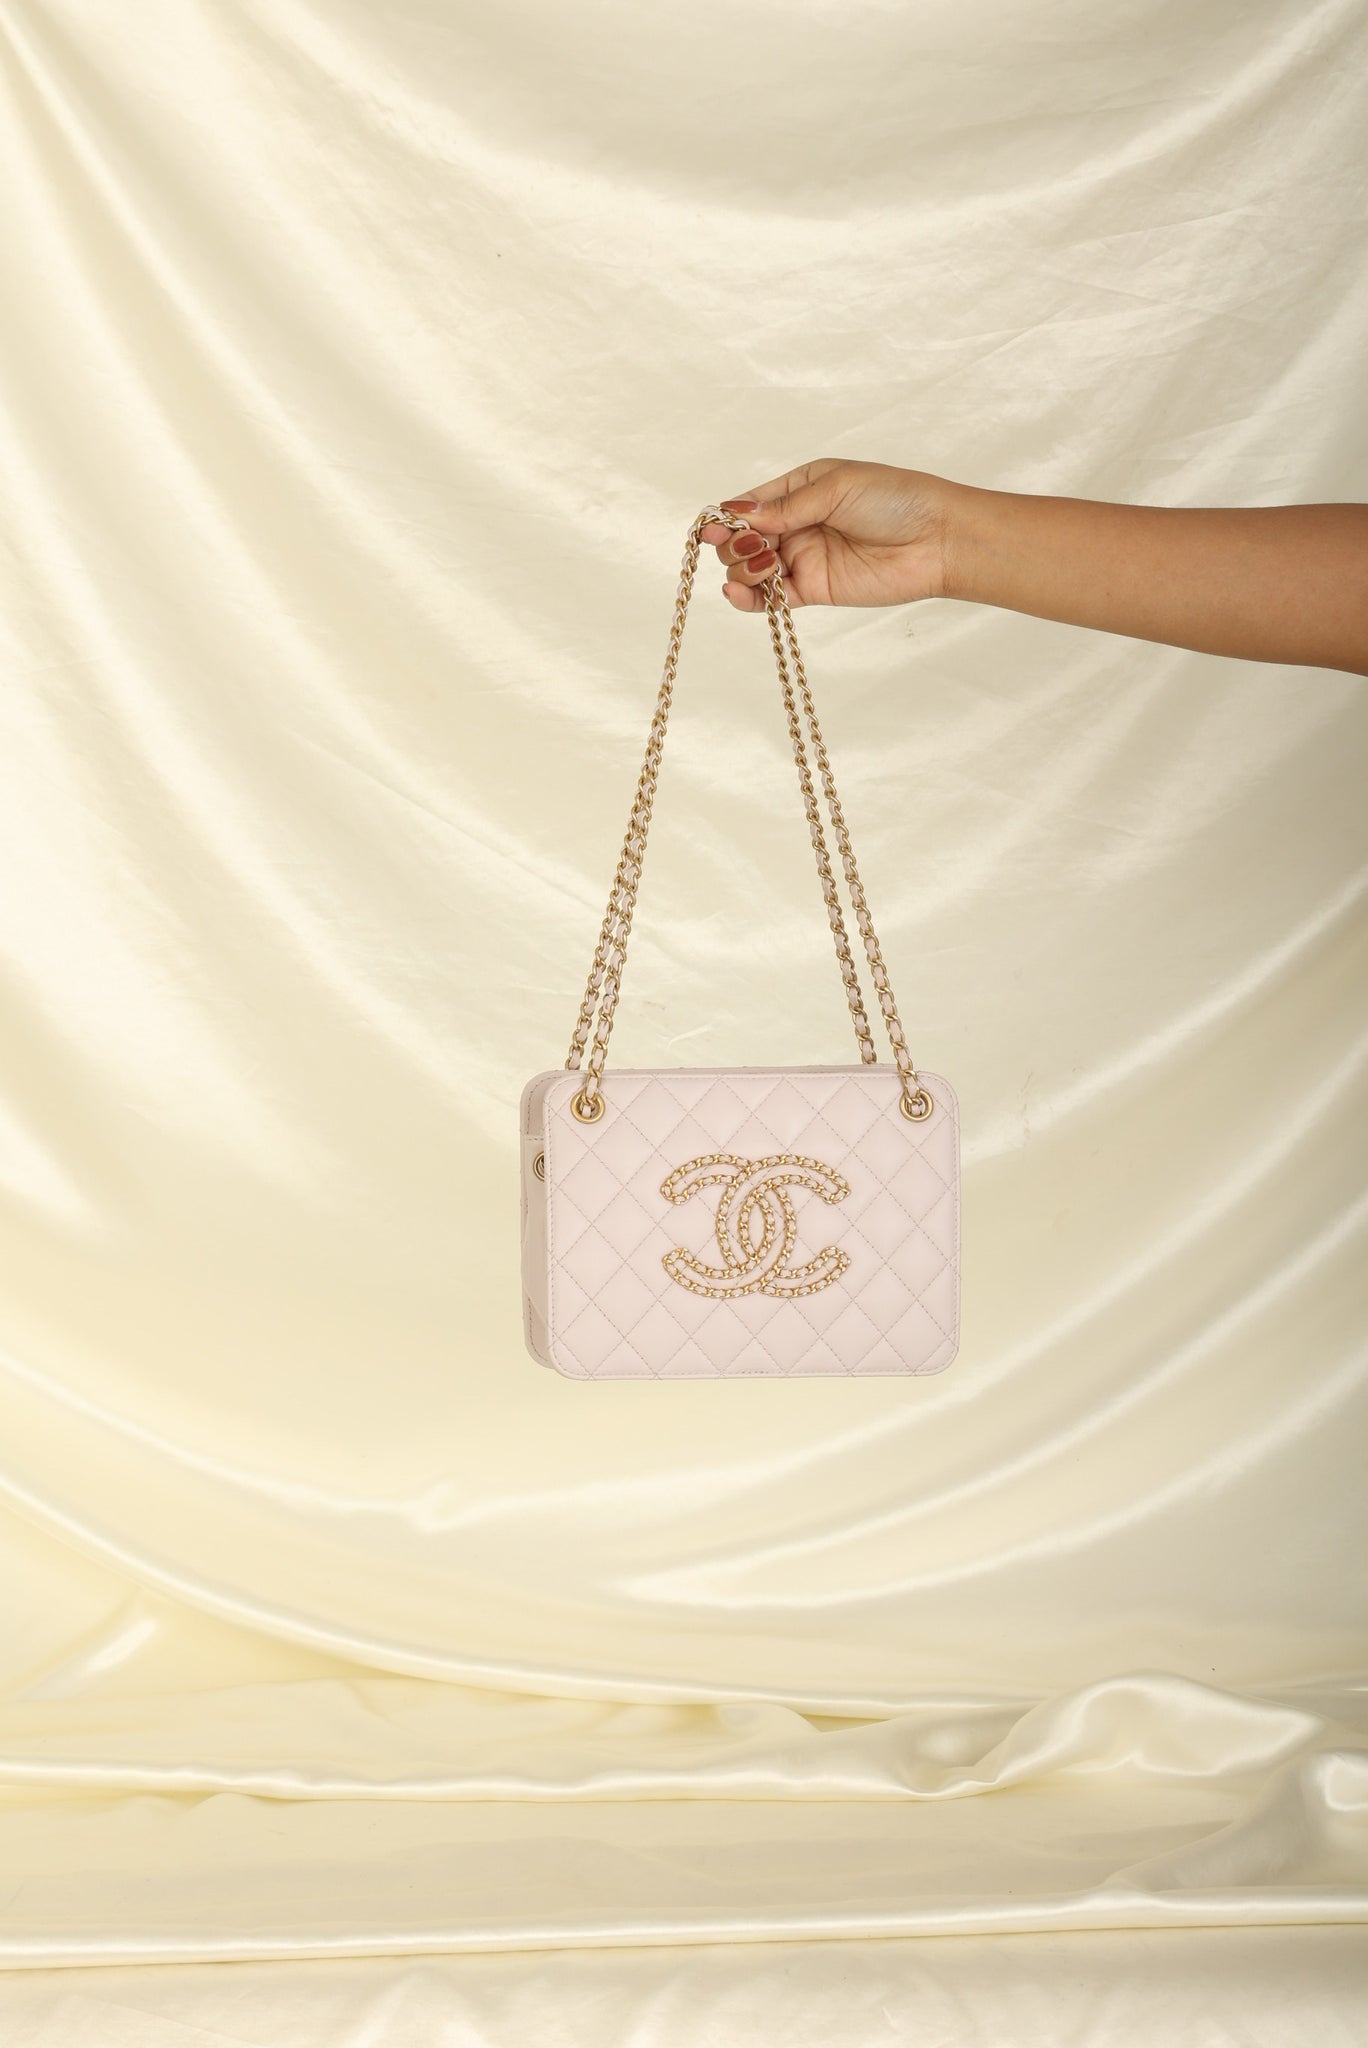 Chanel Brand New Classic Rare Lavender Blue Ombre Degrade Mini Rectangle  Crossbody Bag